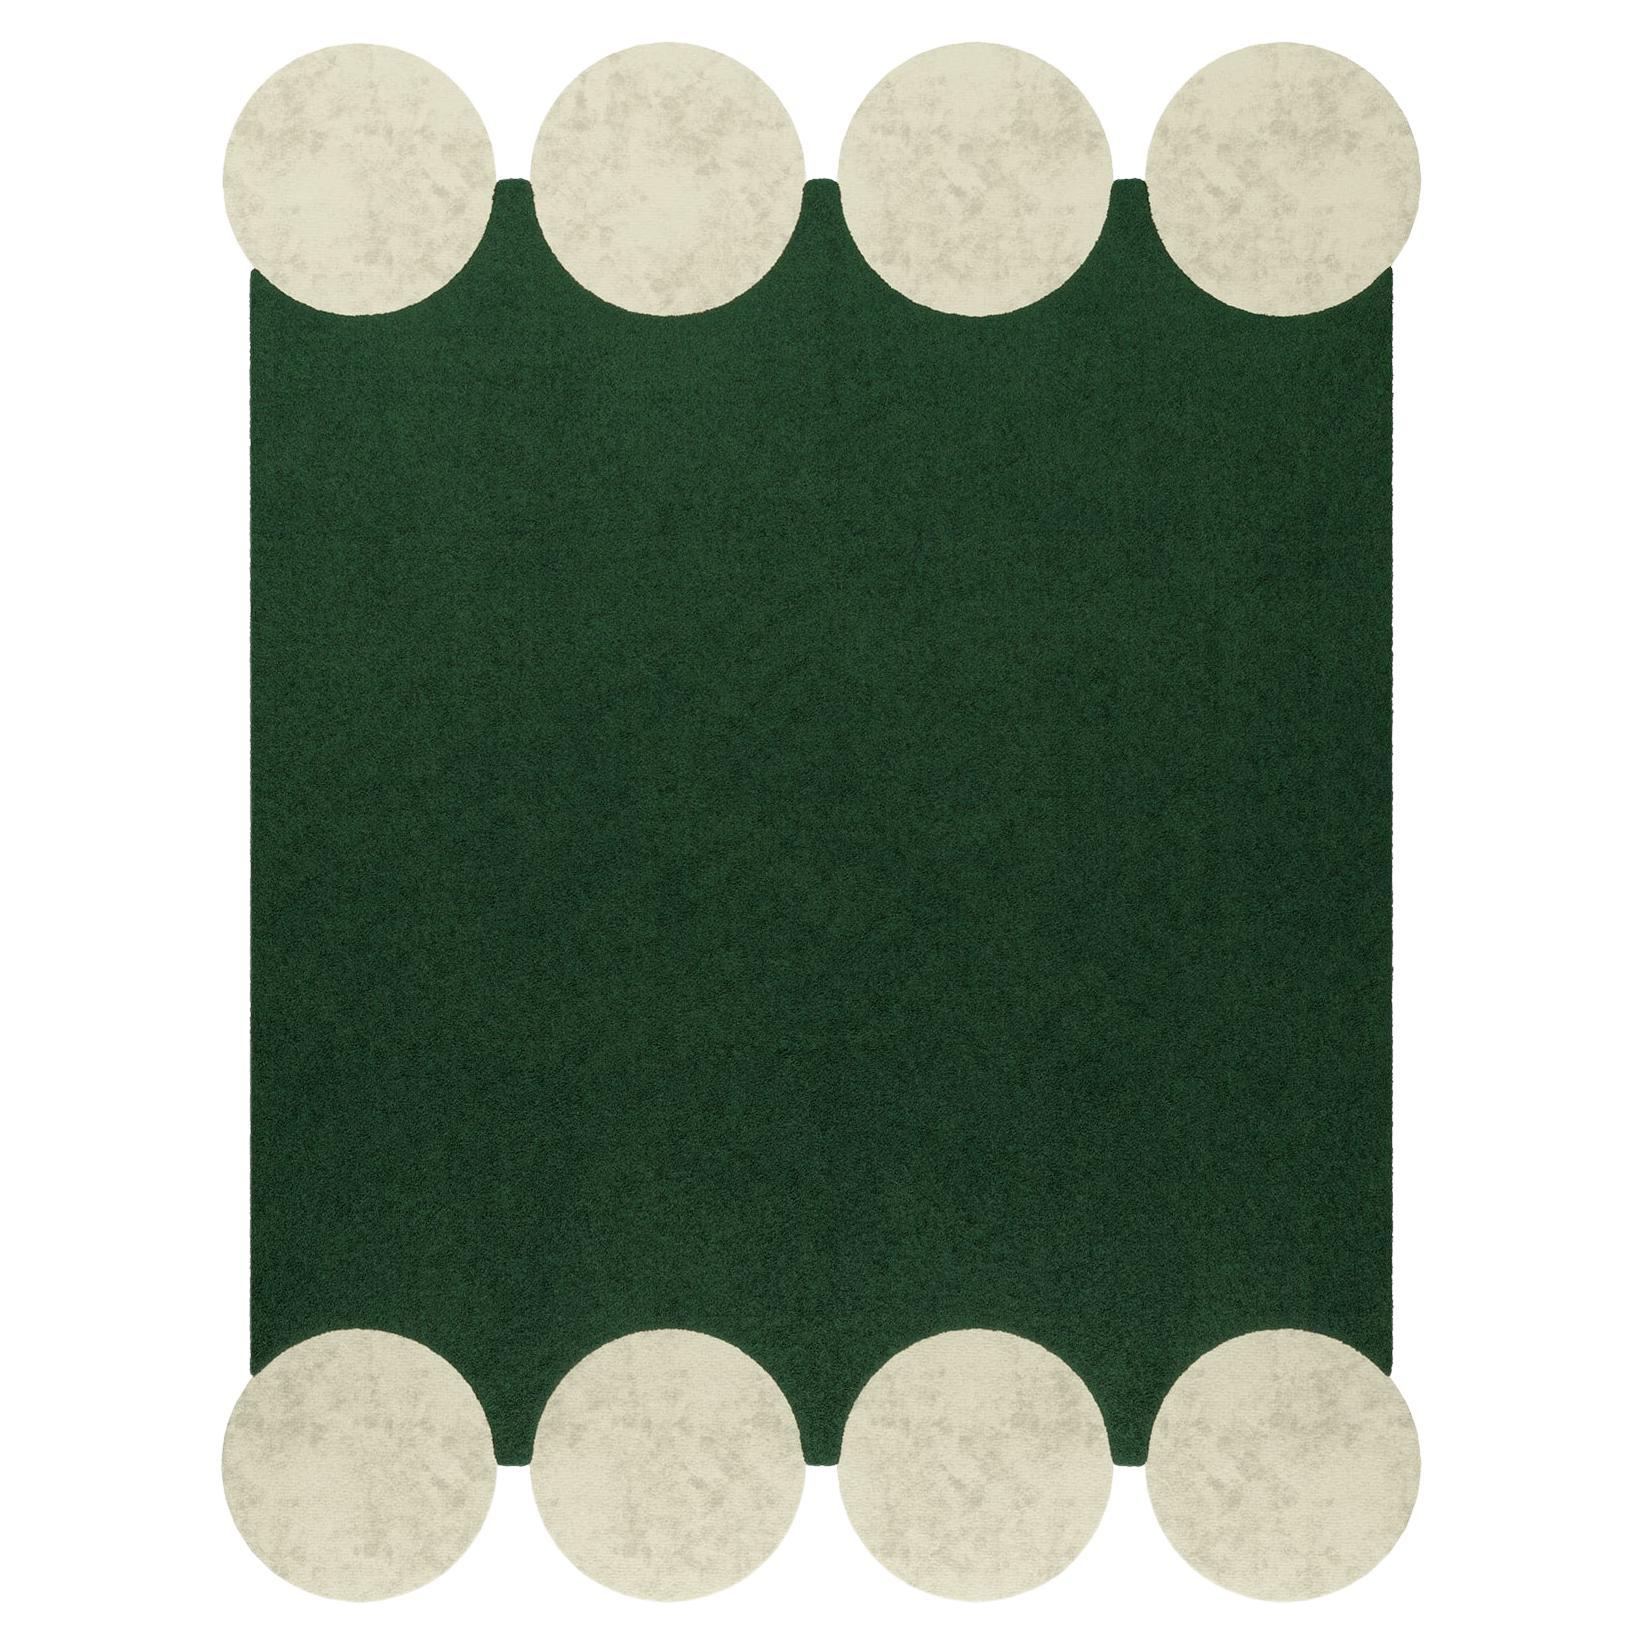 Moderner quadratischer handgetufteter Teppich im Memphis-Stil, grün mit weißem Kreismuster, handgetuftet